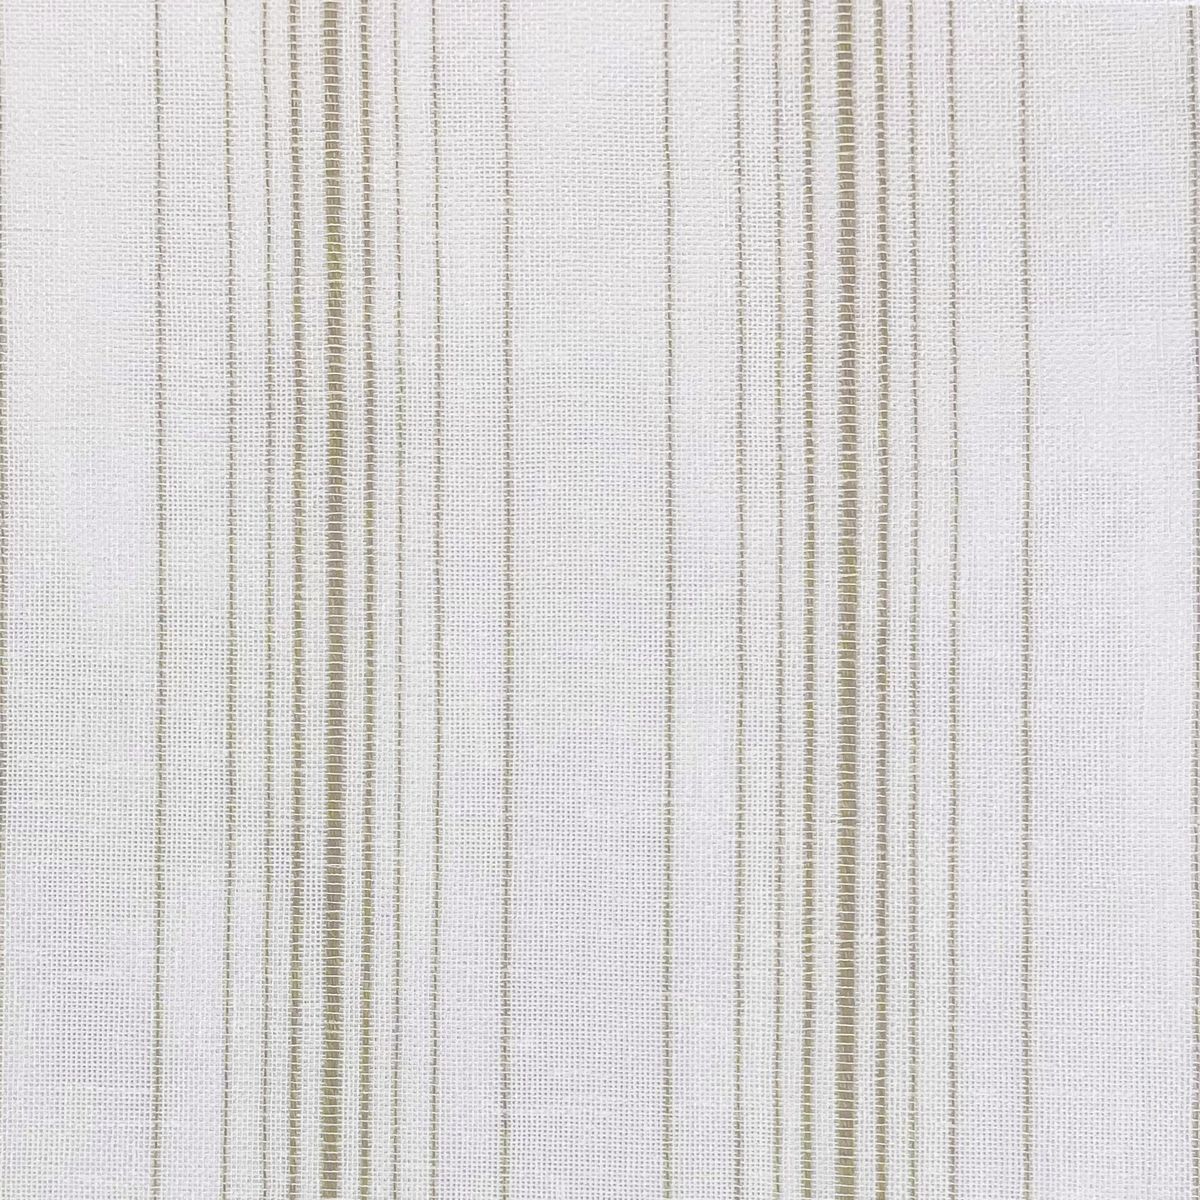 Corfu Linen Fabric by Chatham Glyn